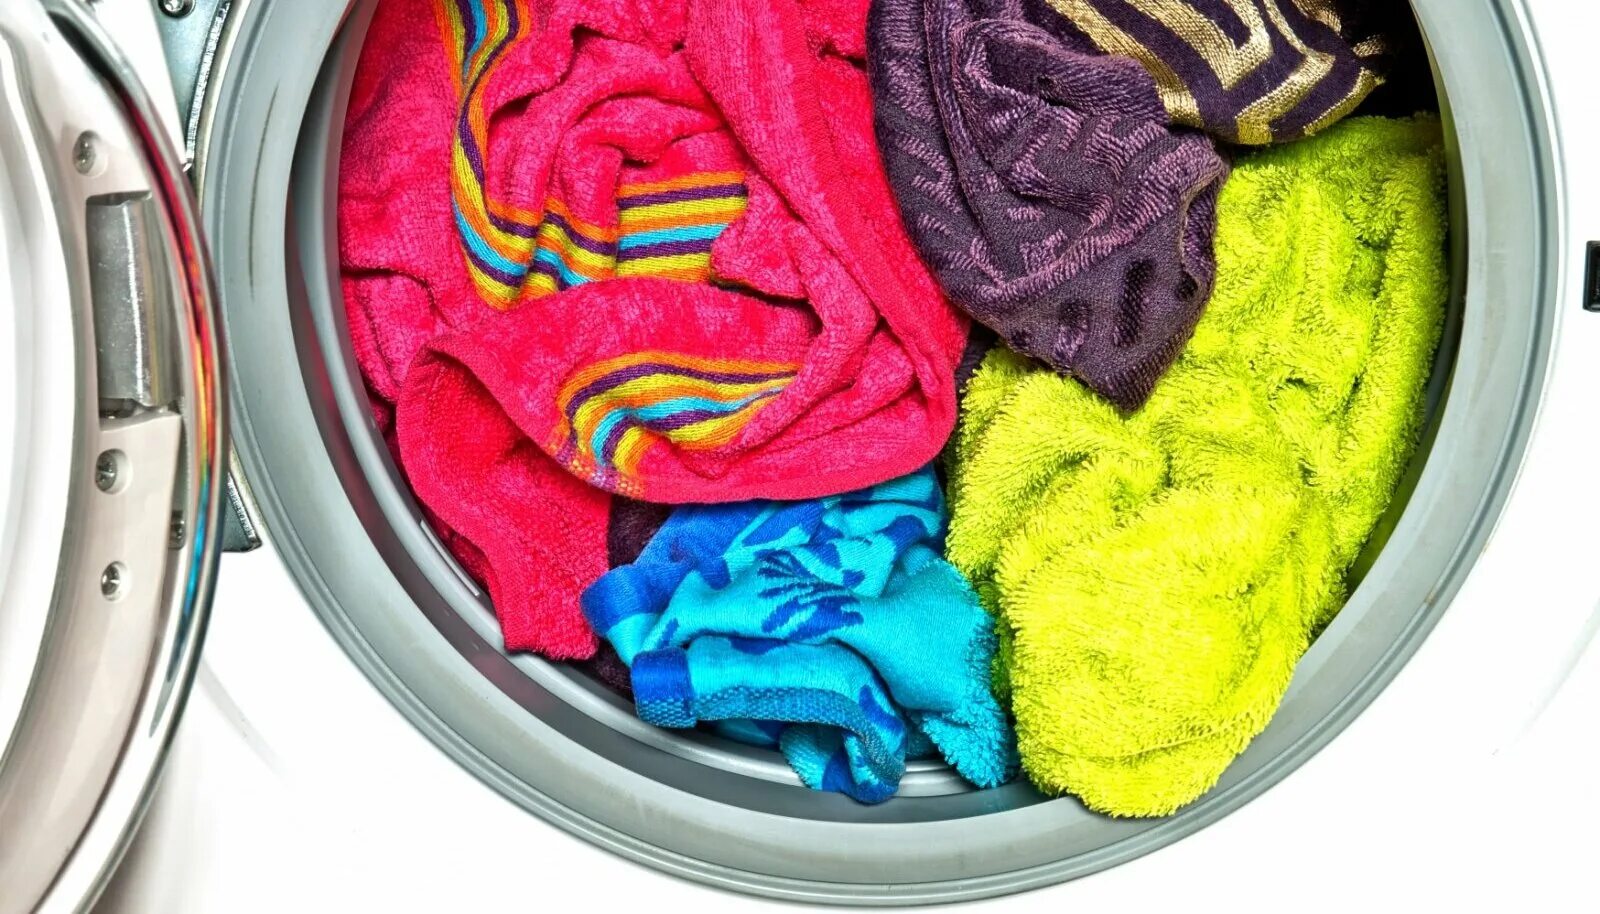 Цветные вещи. Мятое белье в машинке. Вонючее полотенце. Одежда после стирки пахнет затхлостью. Воняют полотенца